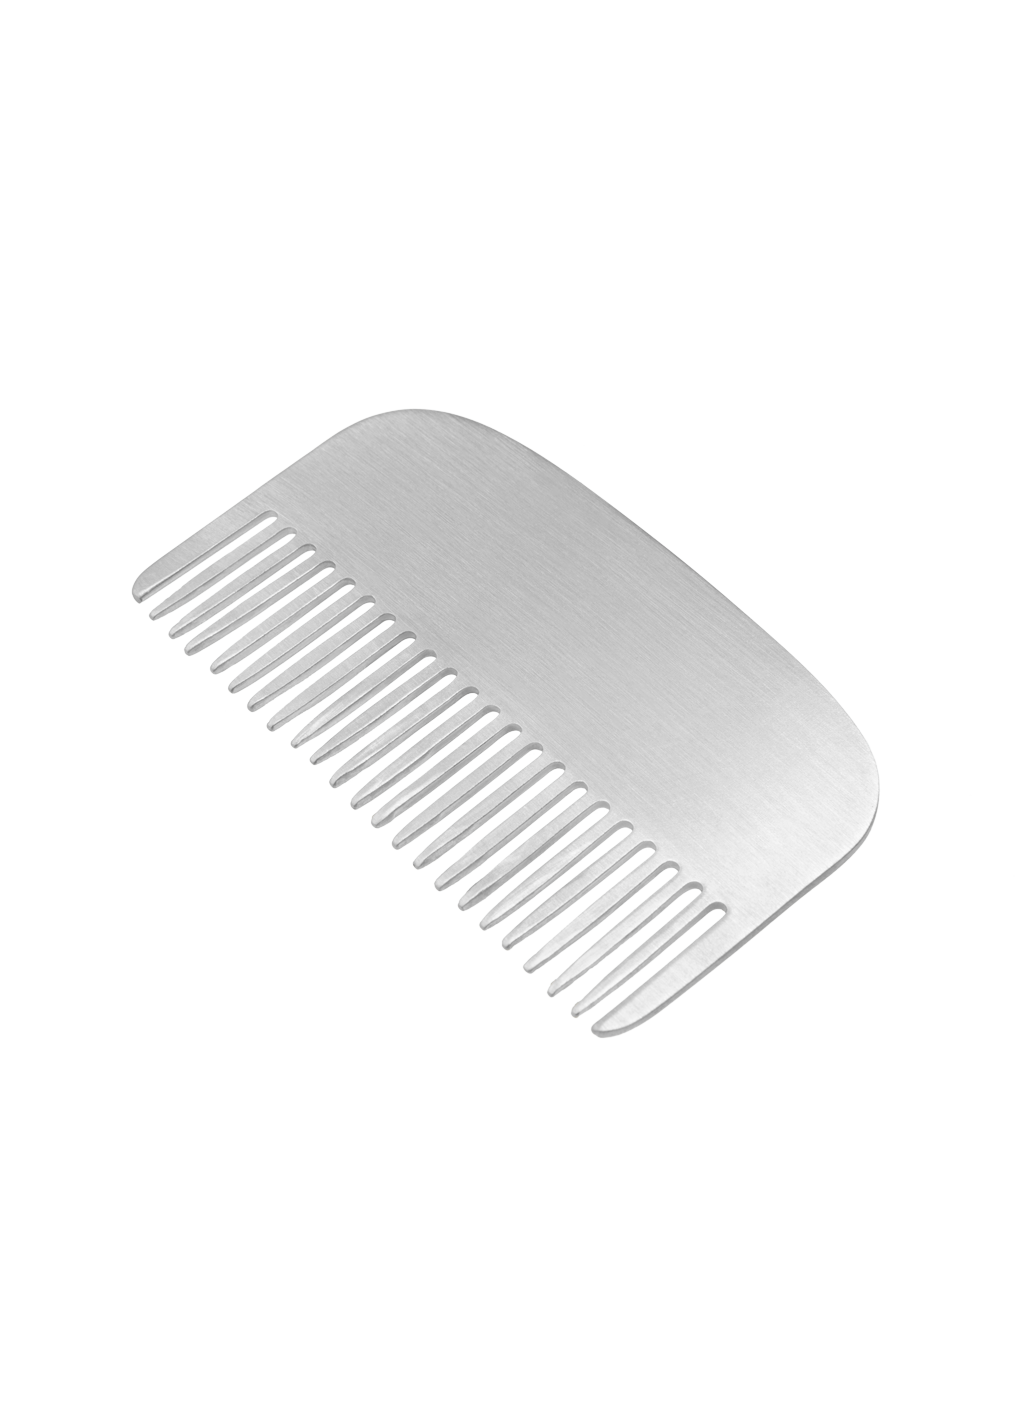 the combing comb de esterlina